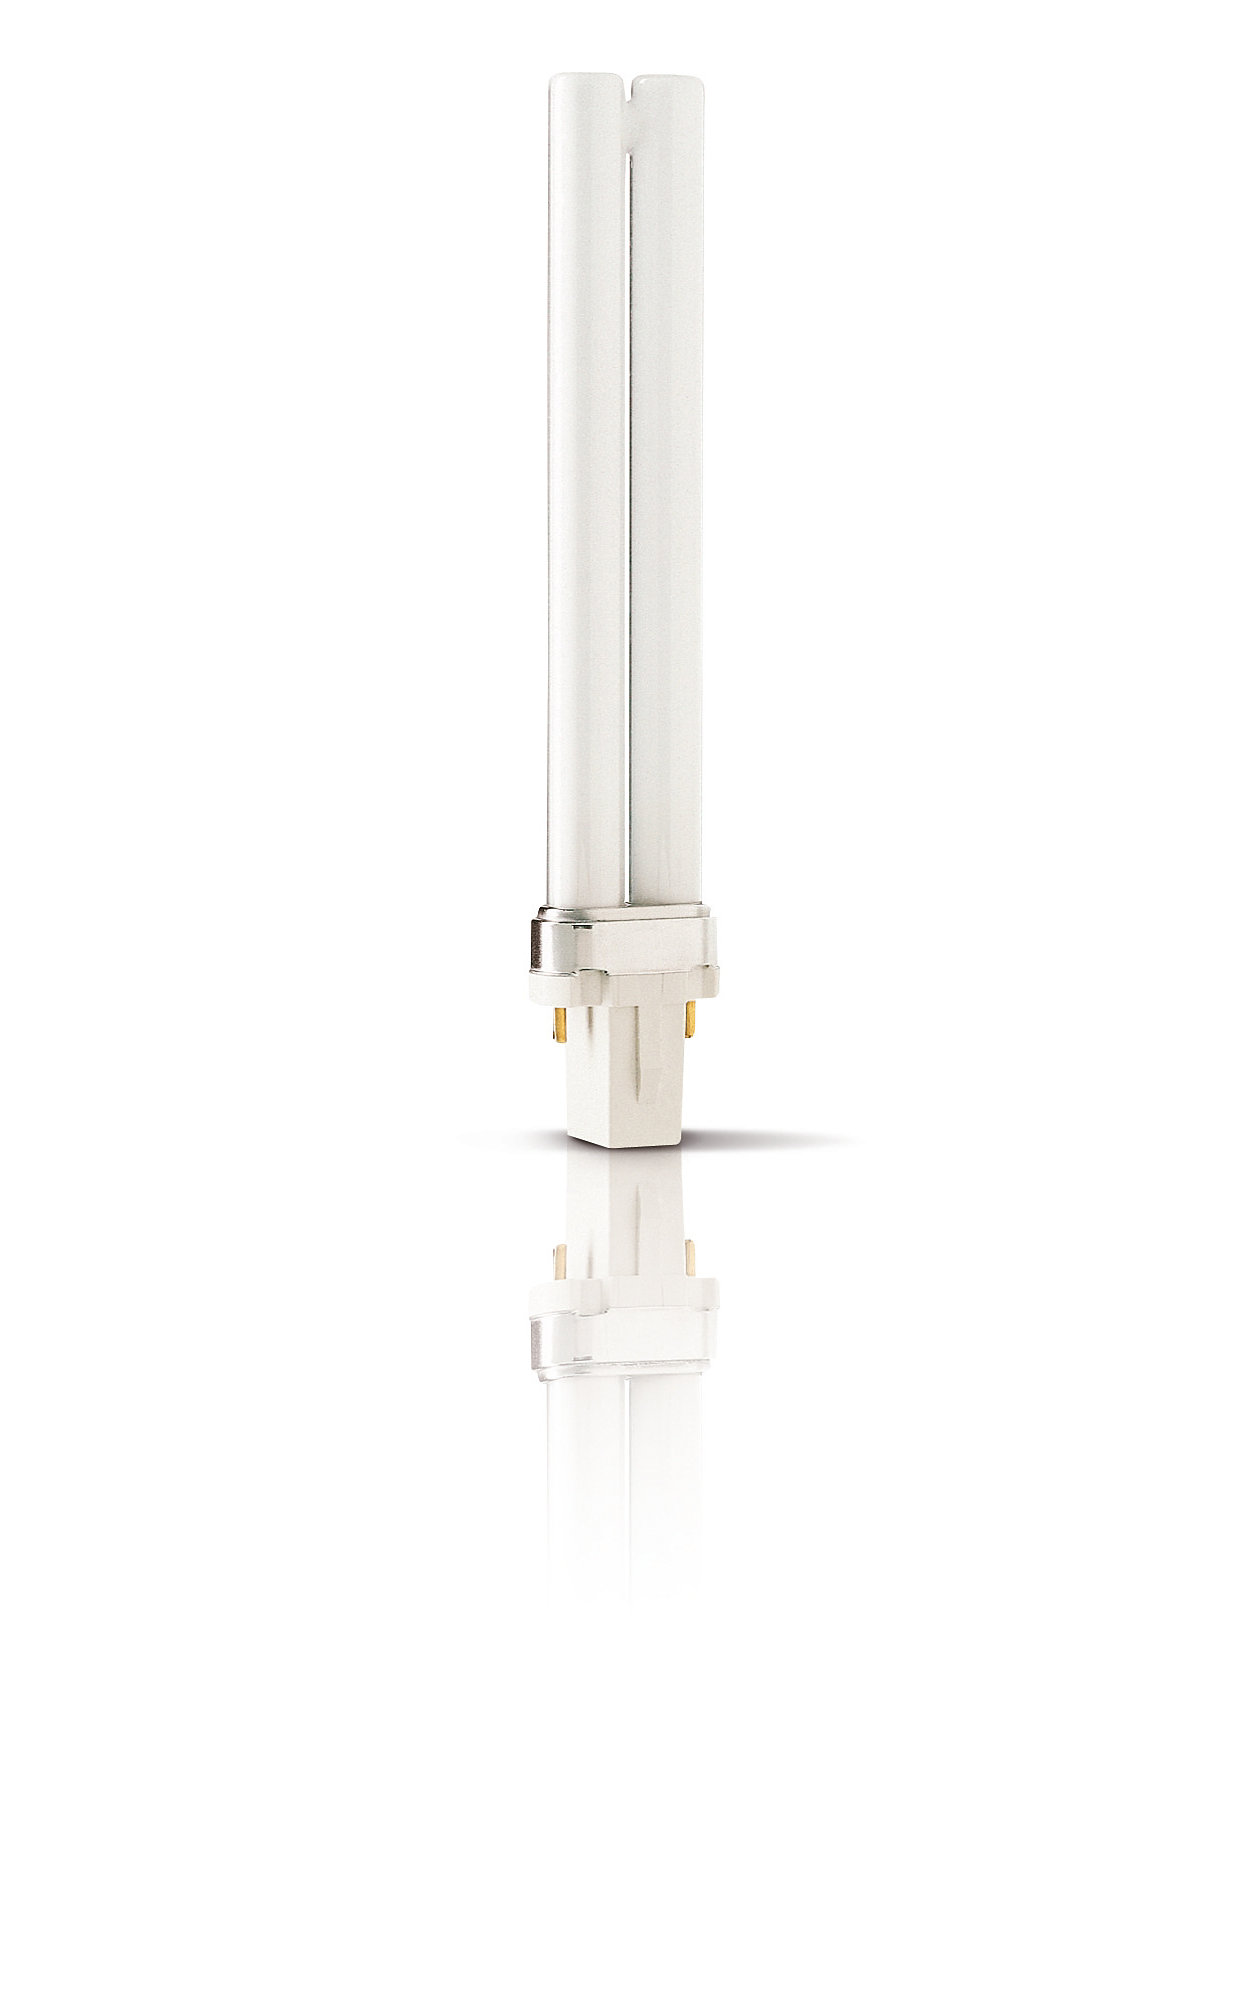 UVB Narrowband PL-L/PL-S – максимально эффективная лампа для фототерапии представляет собой удобное дизайнерское решение